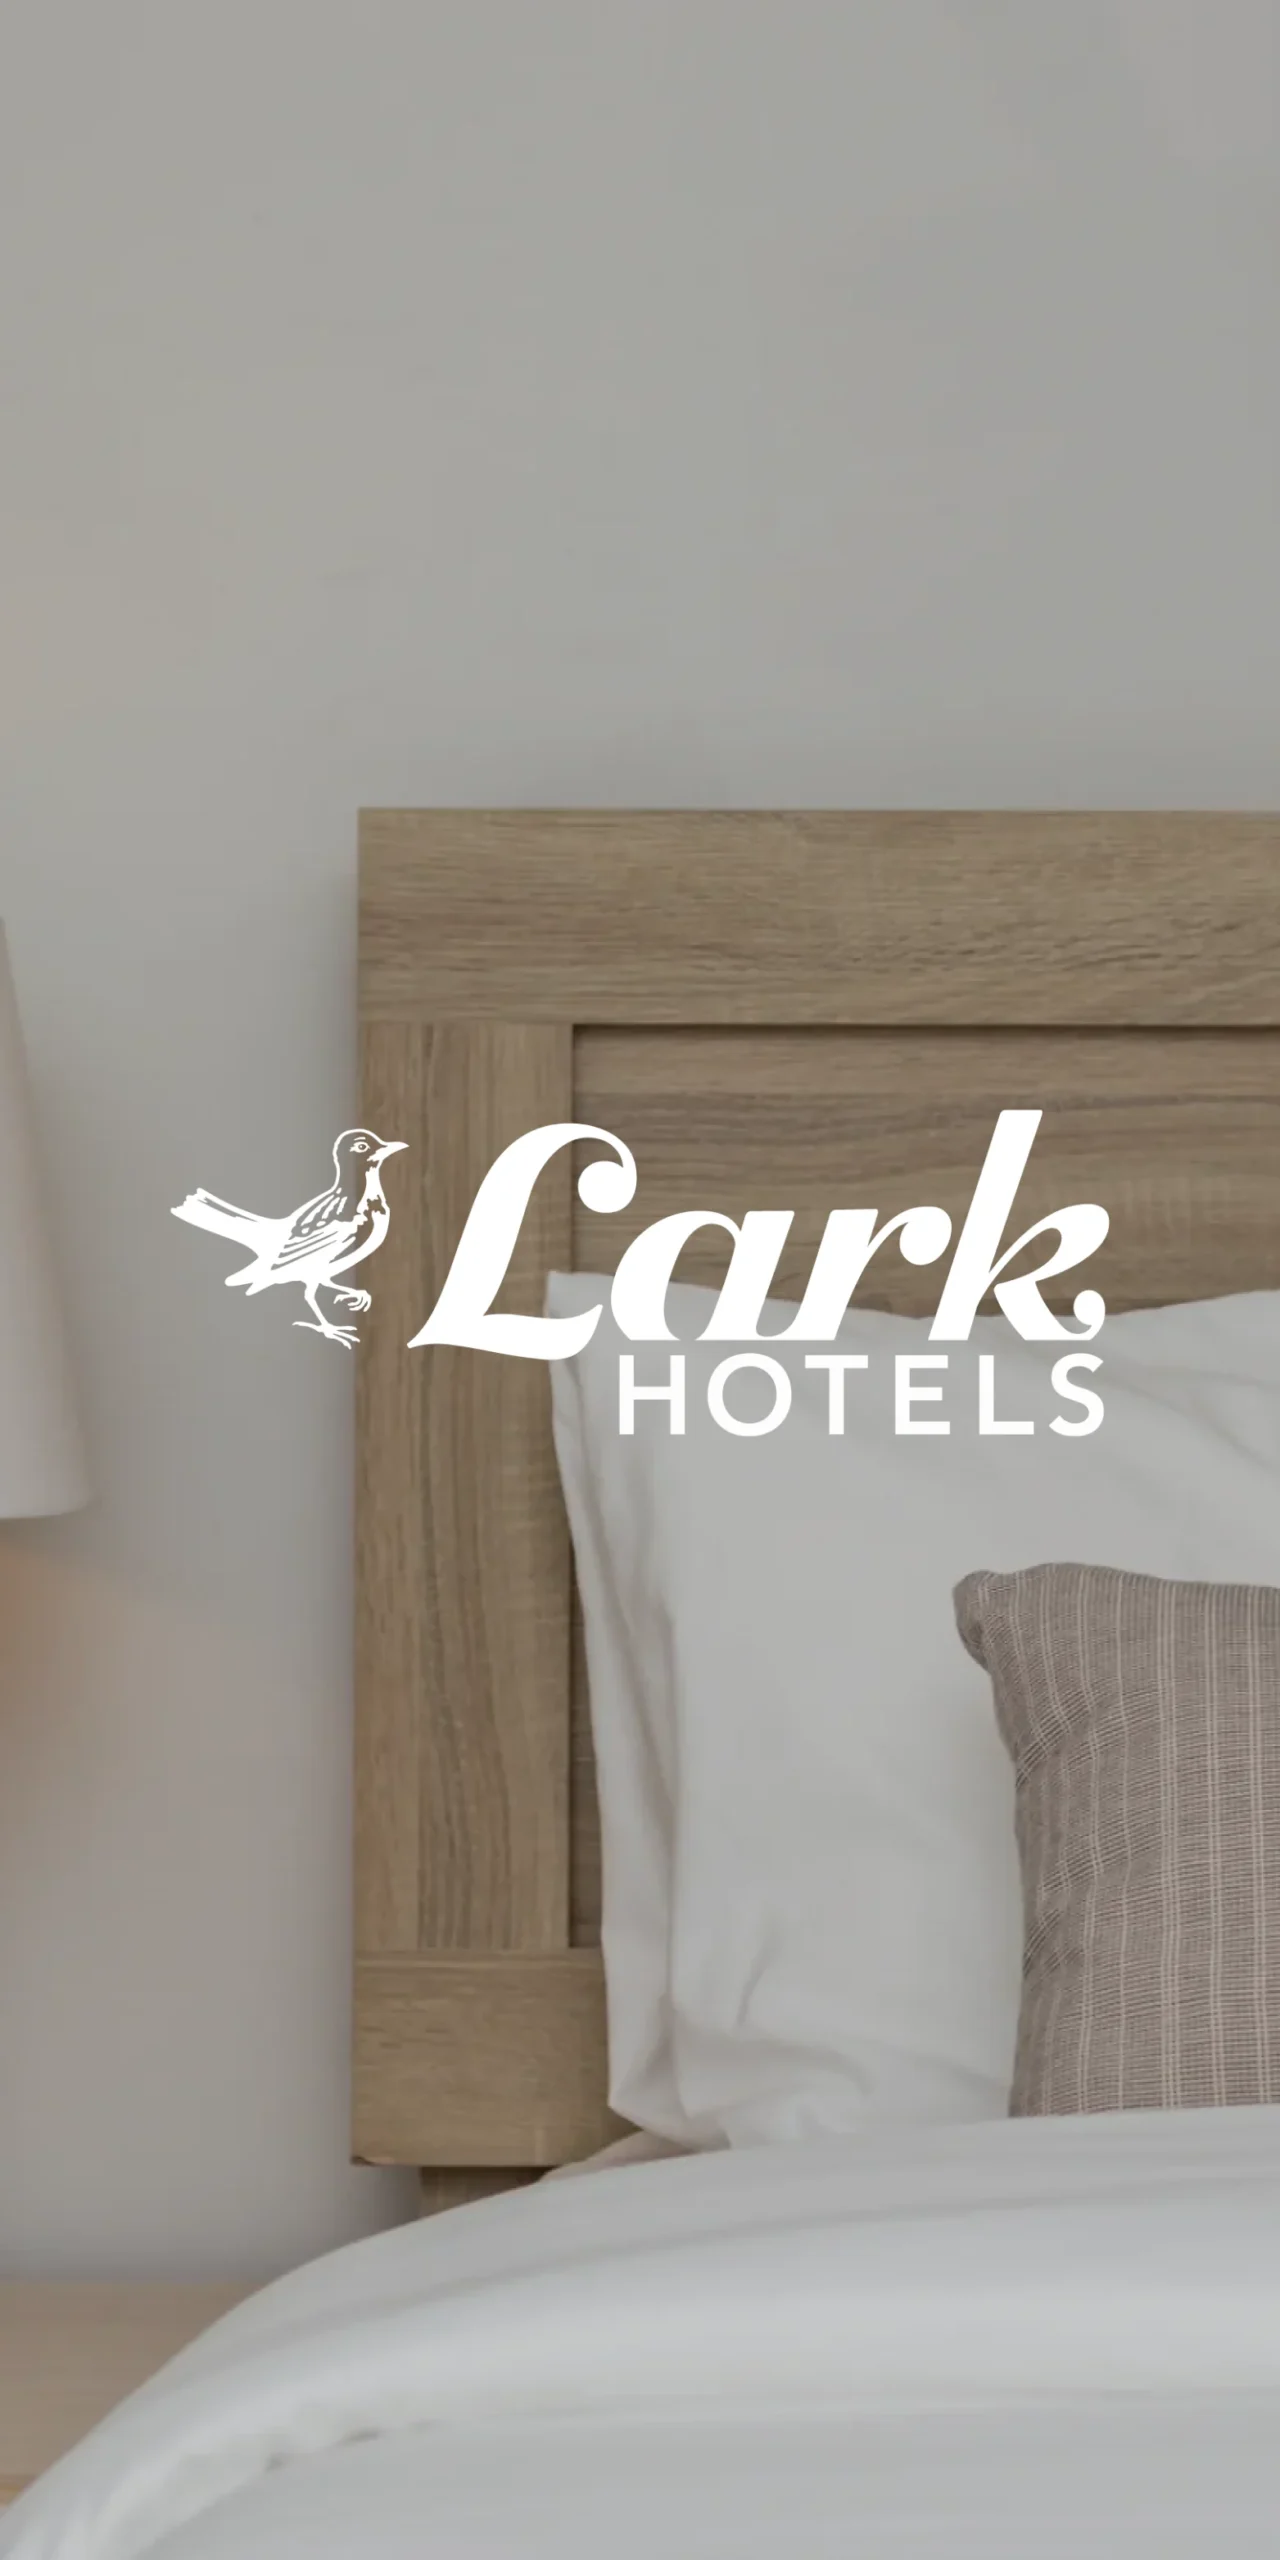 Larks Hotels